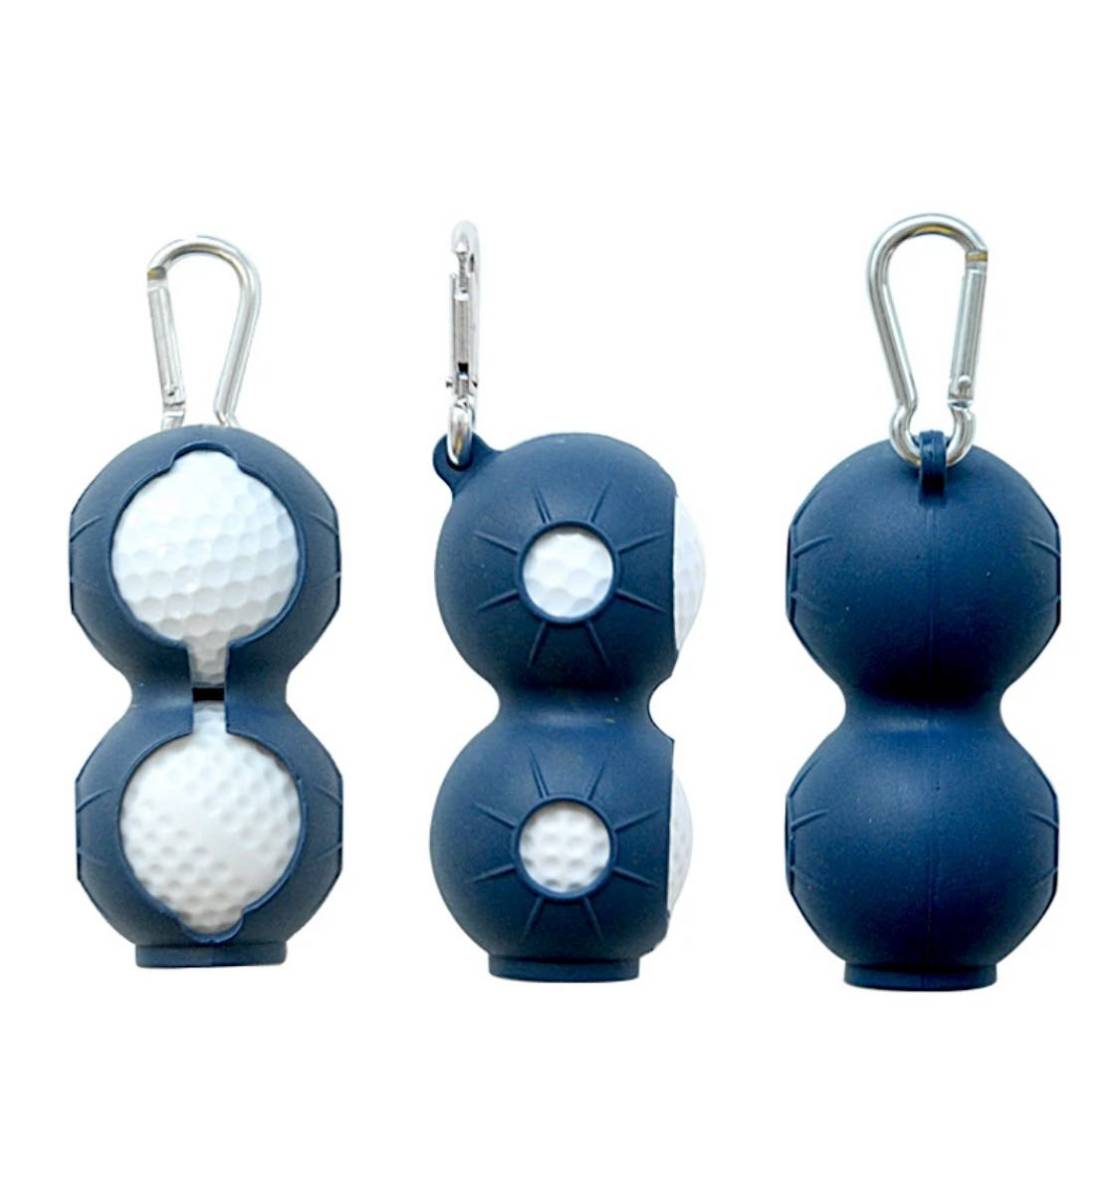 ゴルフ ボールホルダー 紺色 カラビナ付き シリコン製 ラウンド ボールケース_画像3